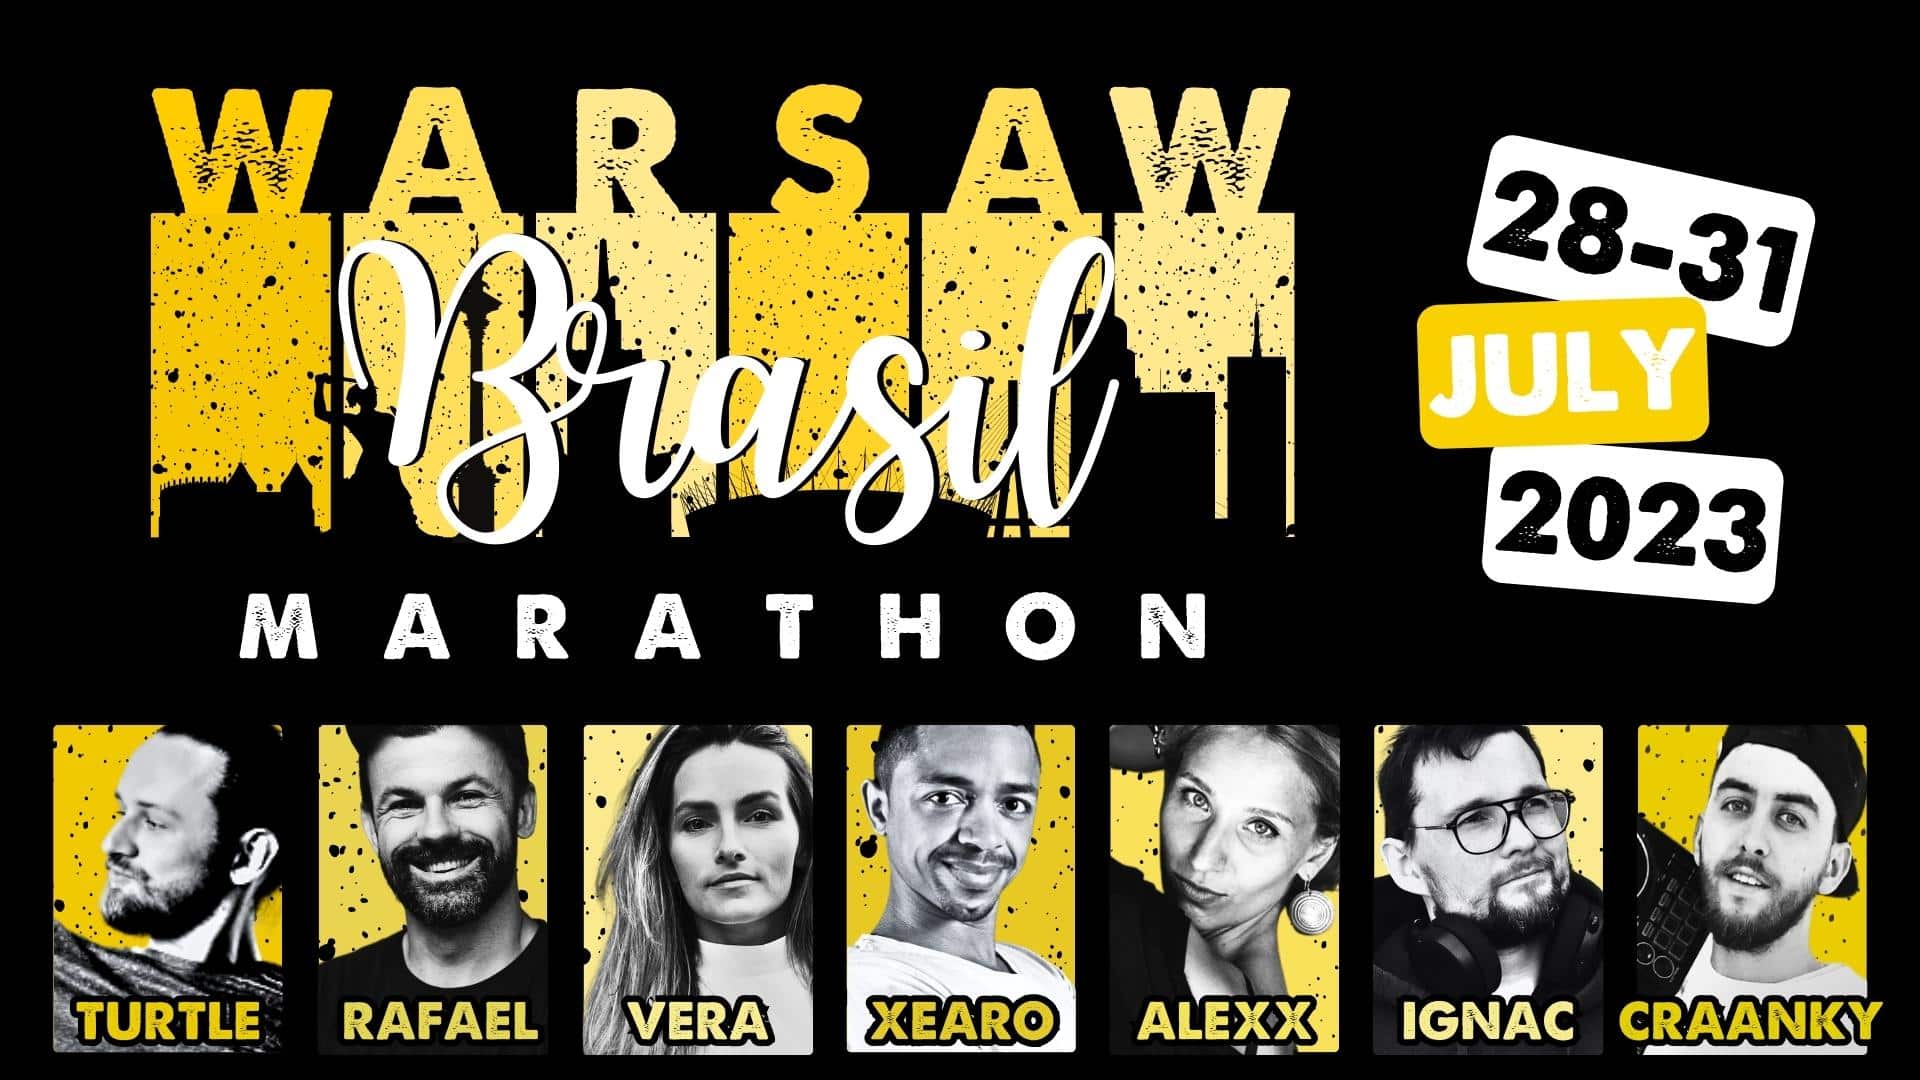 Warsaw Brasil Marathon 2023